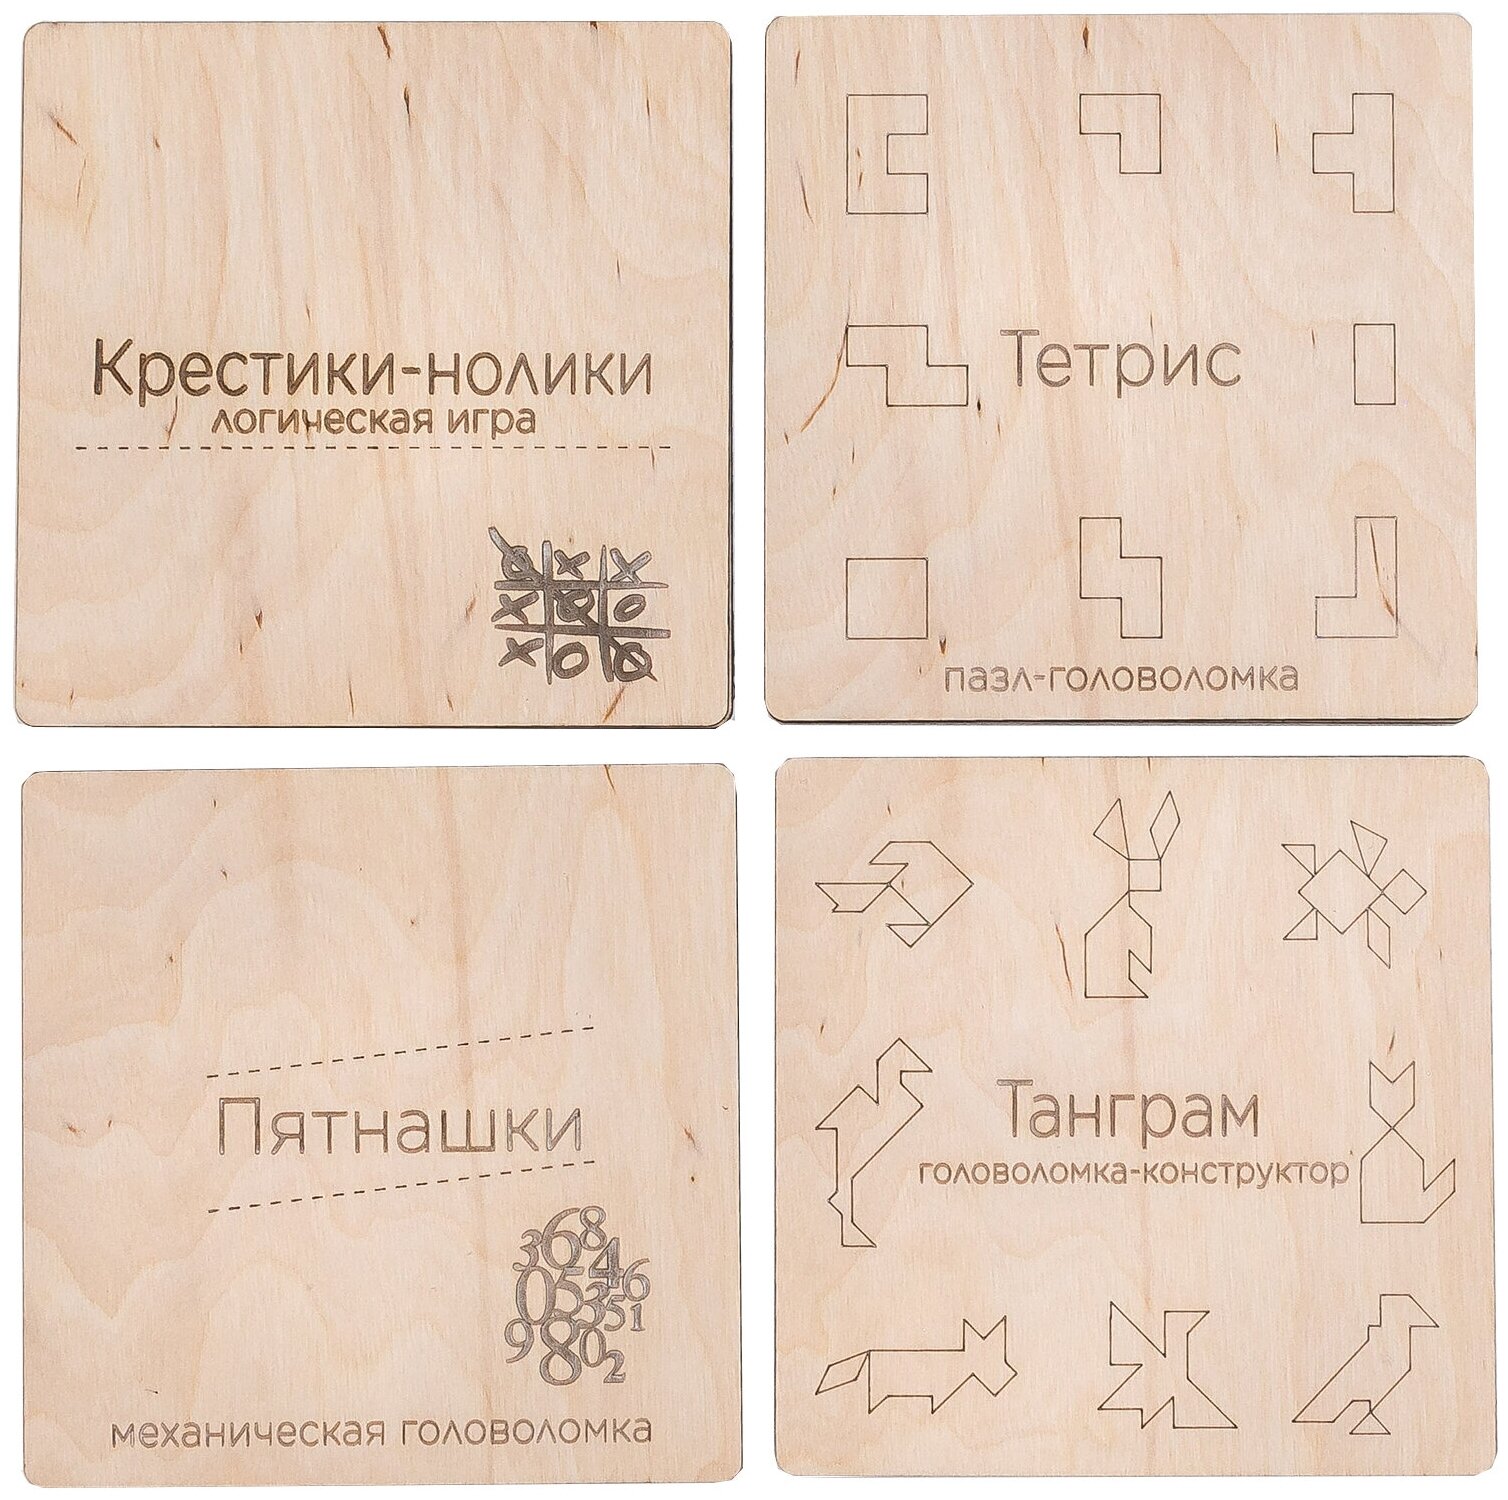 Подарочный набор из четырех игр-головоломок "Бери-дари". Крестики-нолики, пятнашки, танграм, тетрис деревянные.